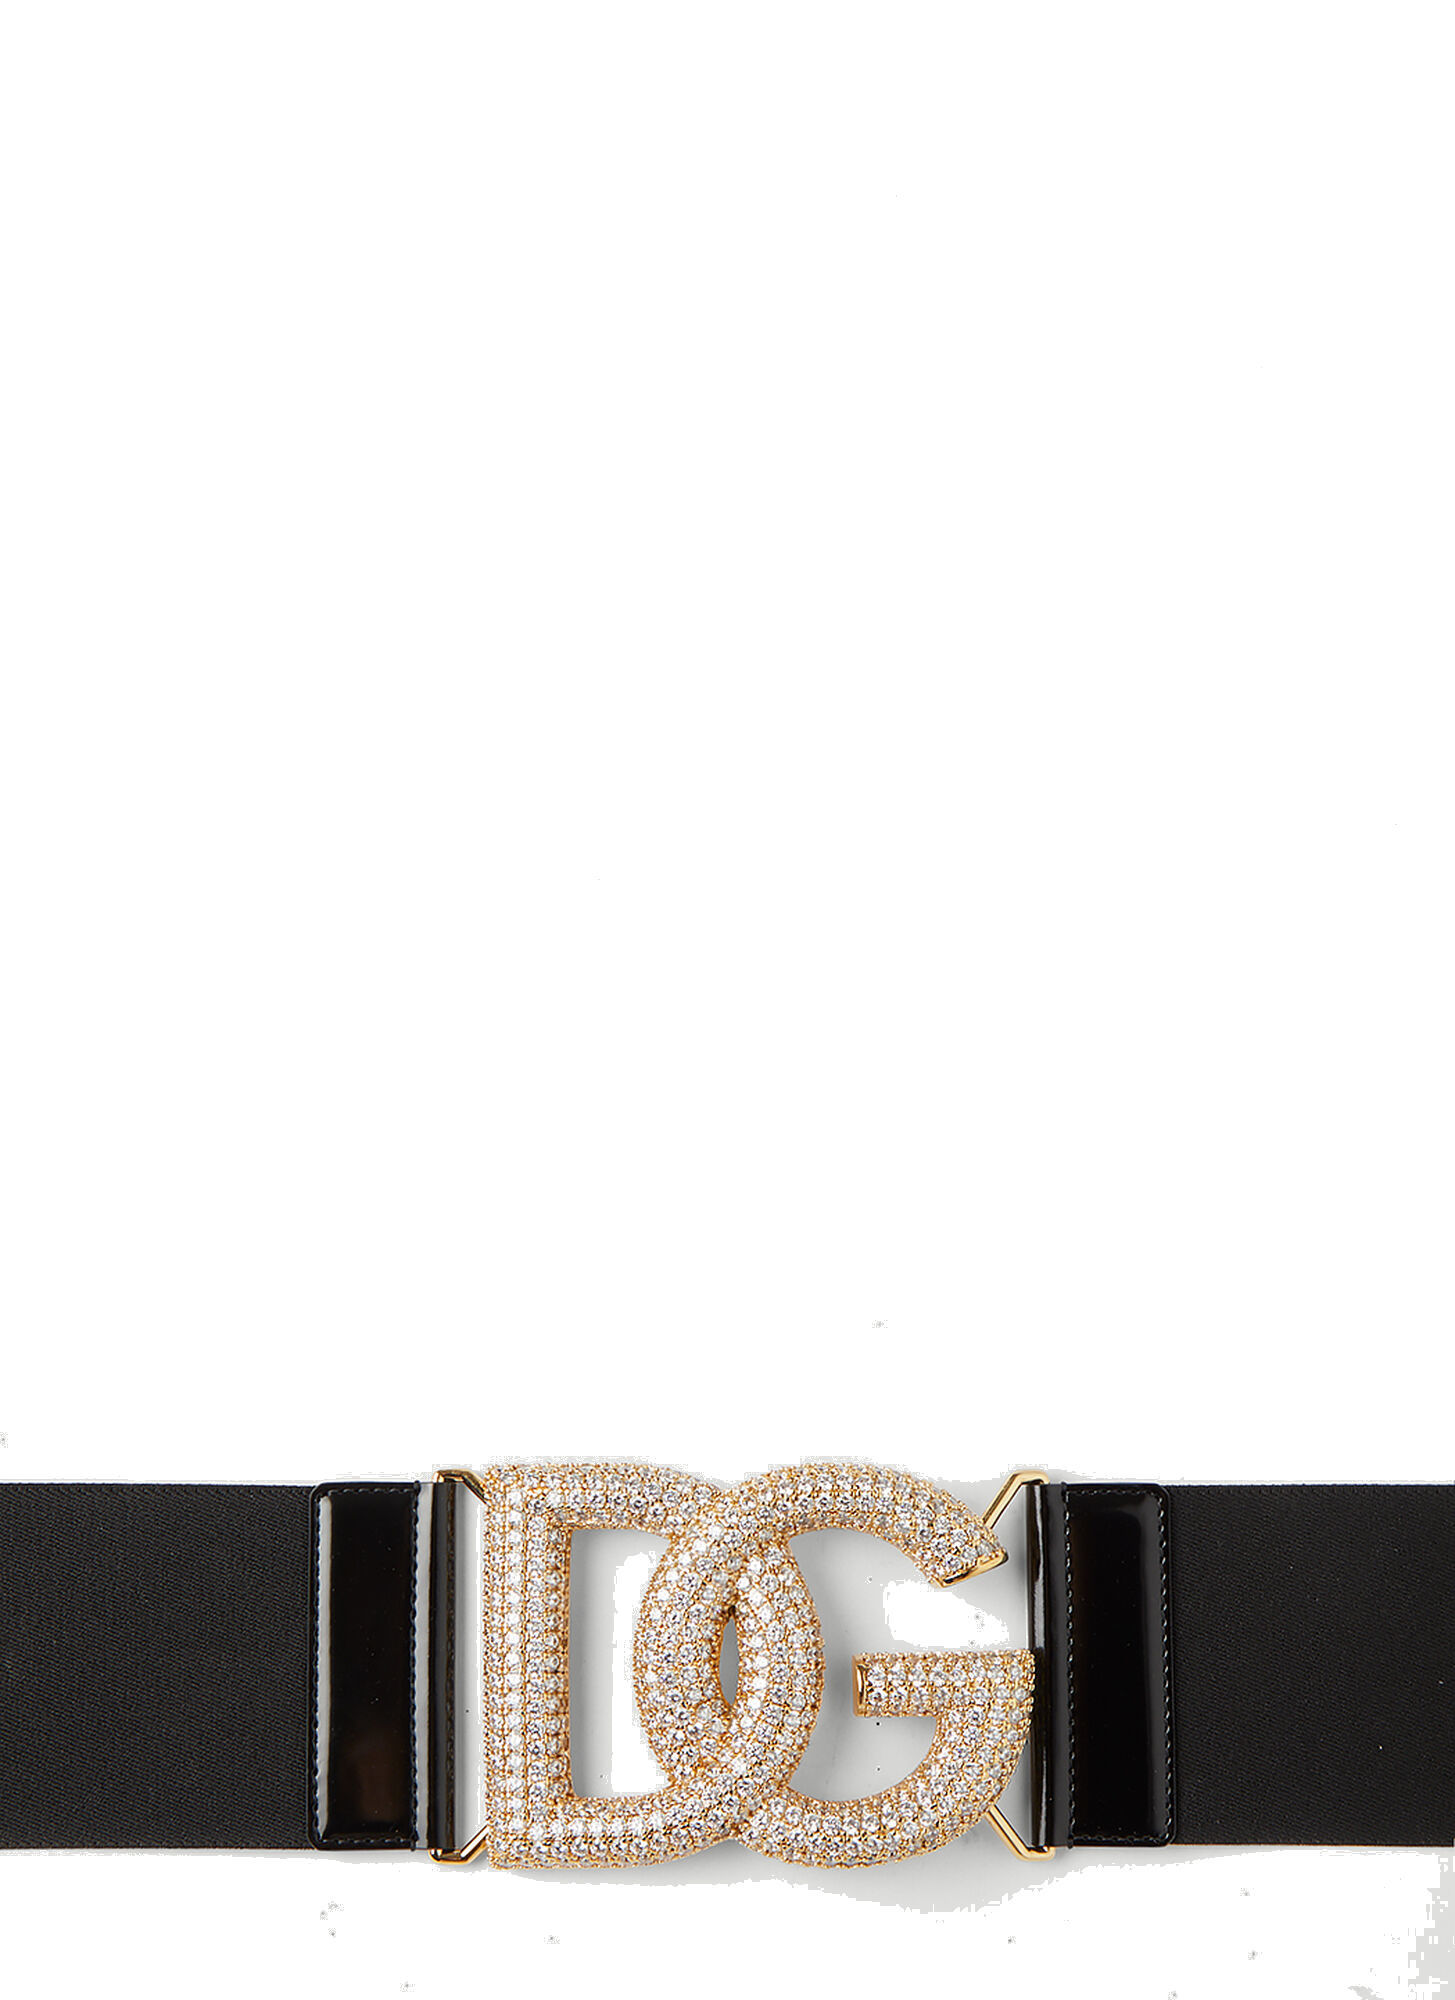 Photo: Embellished DG Buckle Waist Belt in Black